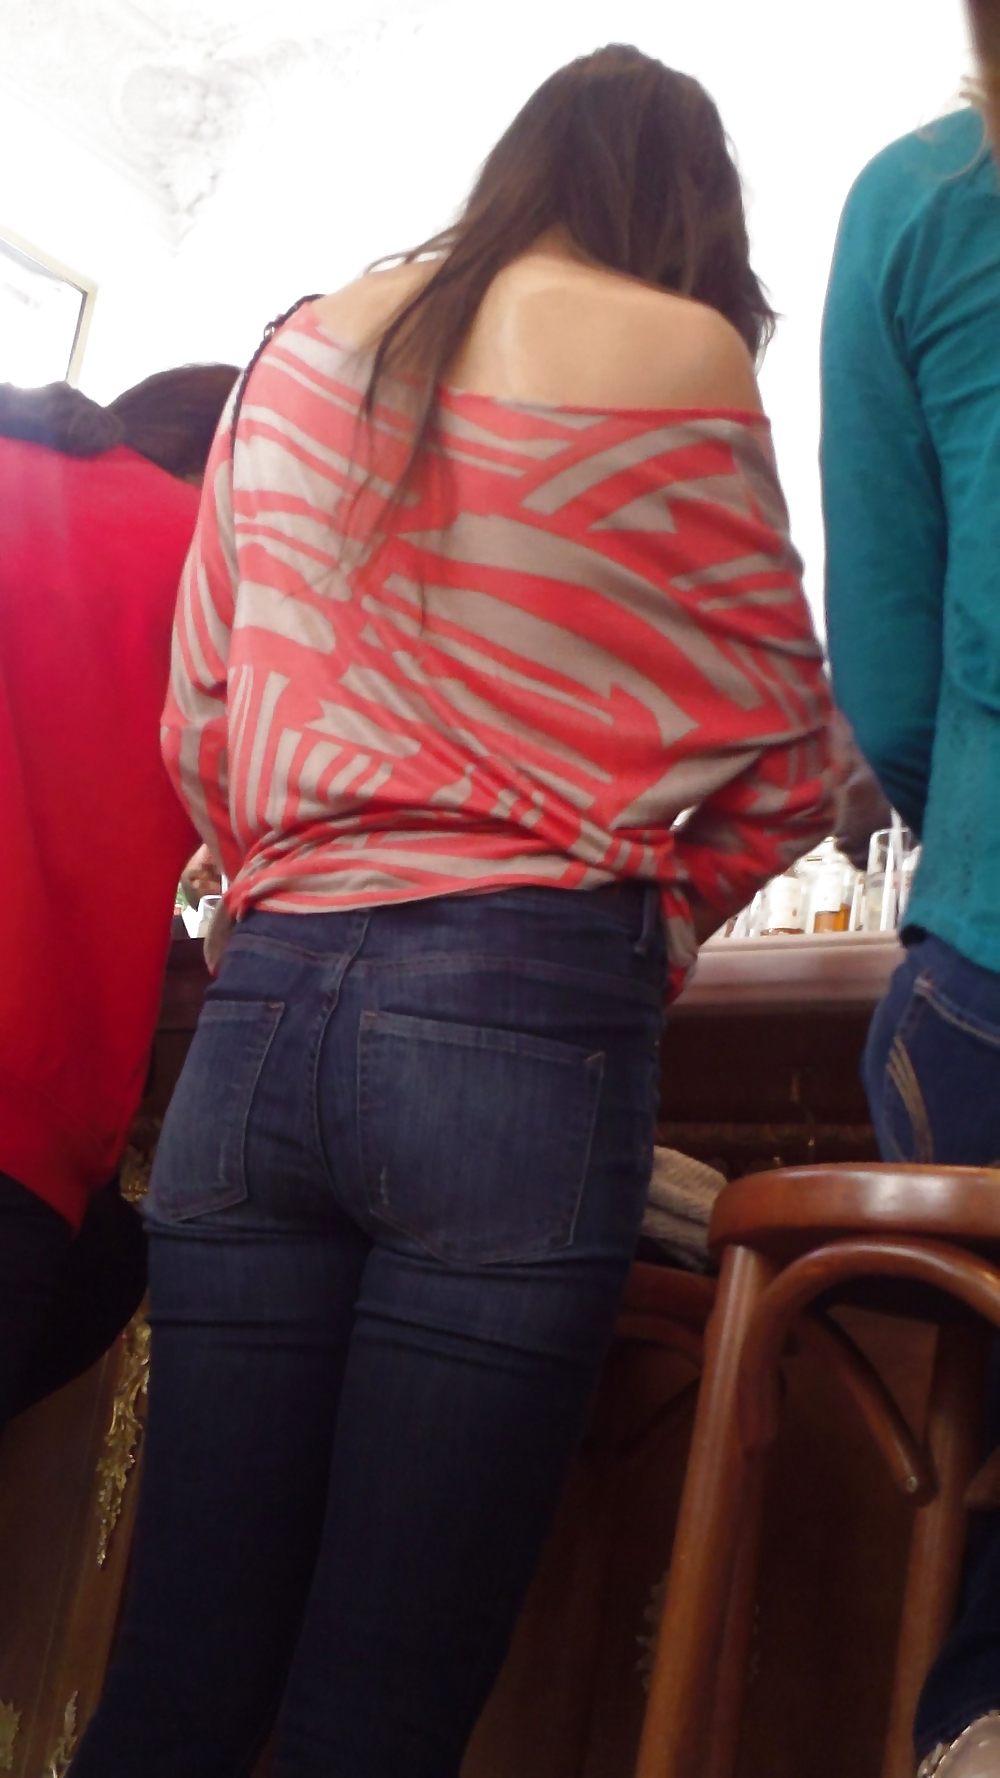 Popular teen girls butt & ass in jeans part 2 #24181013